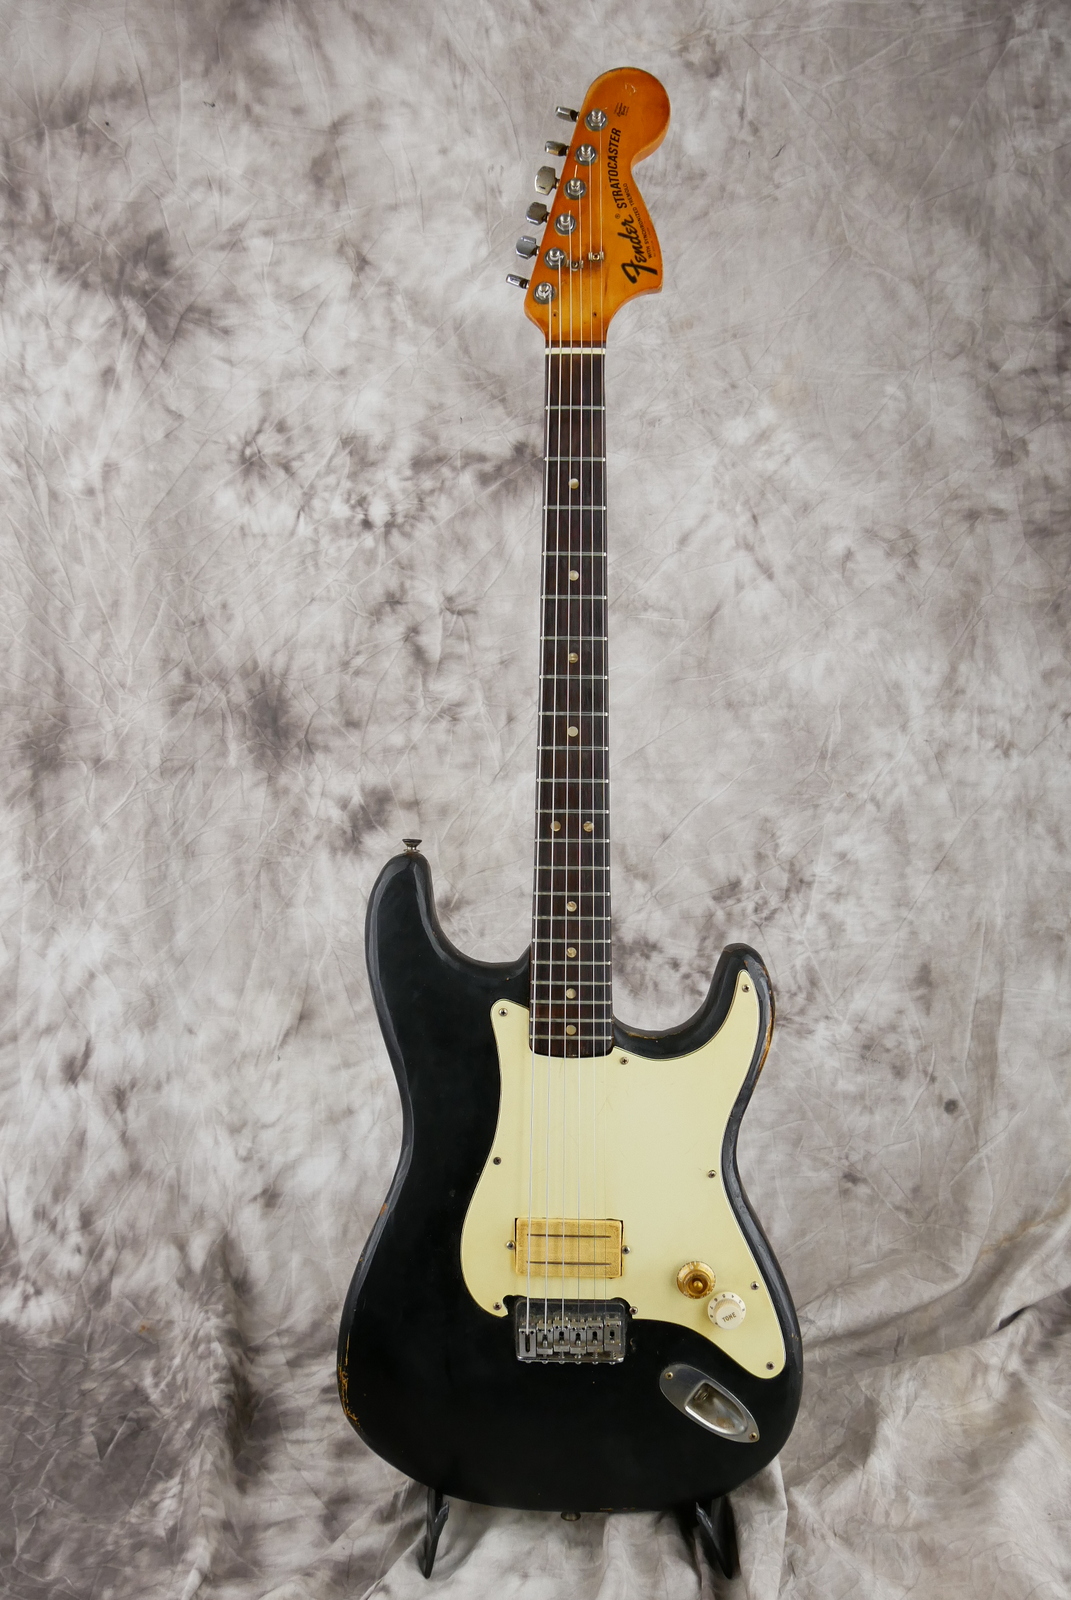 Fender_Stratocaster_one_humbucker_tinkered_black_1971_73-001.JPG